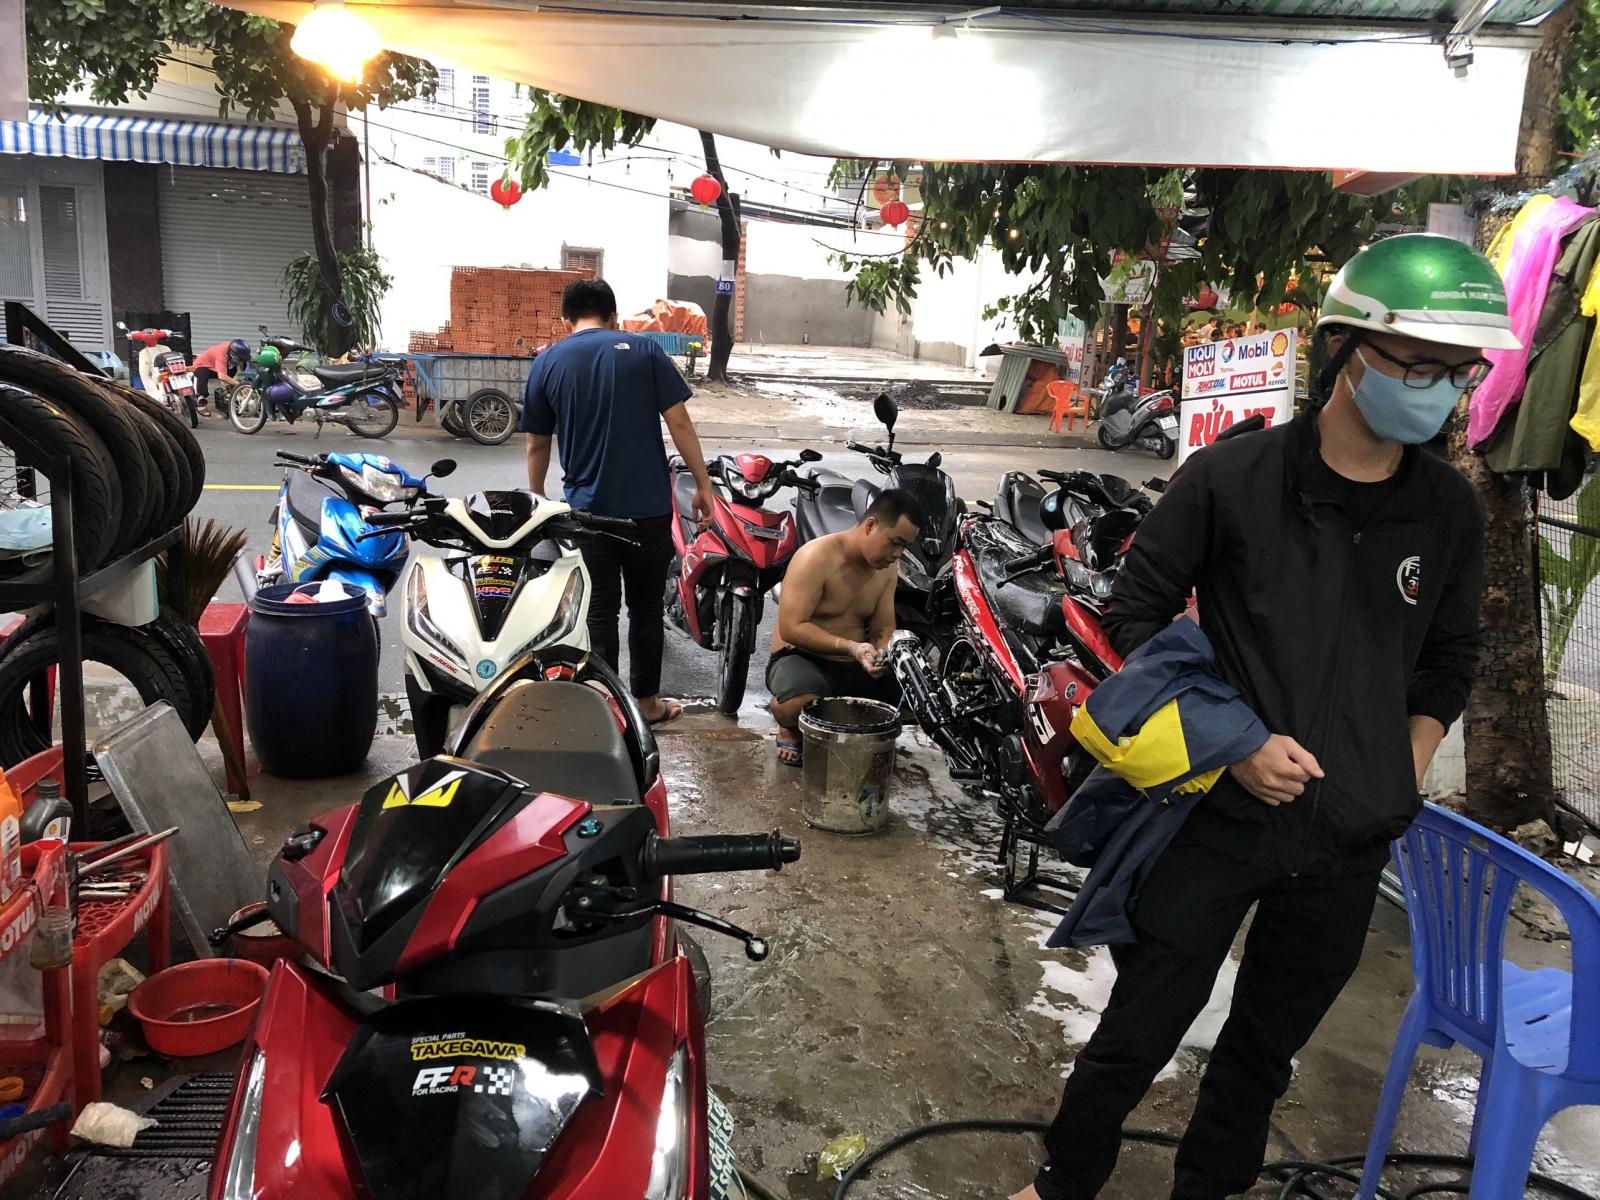 Cần sang tiệm rửa xe sửa xe mặt tiền Nguyễn Sỹ Sách, phường 15, quận Tân Bình, Tp Hồ Chí Minh.